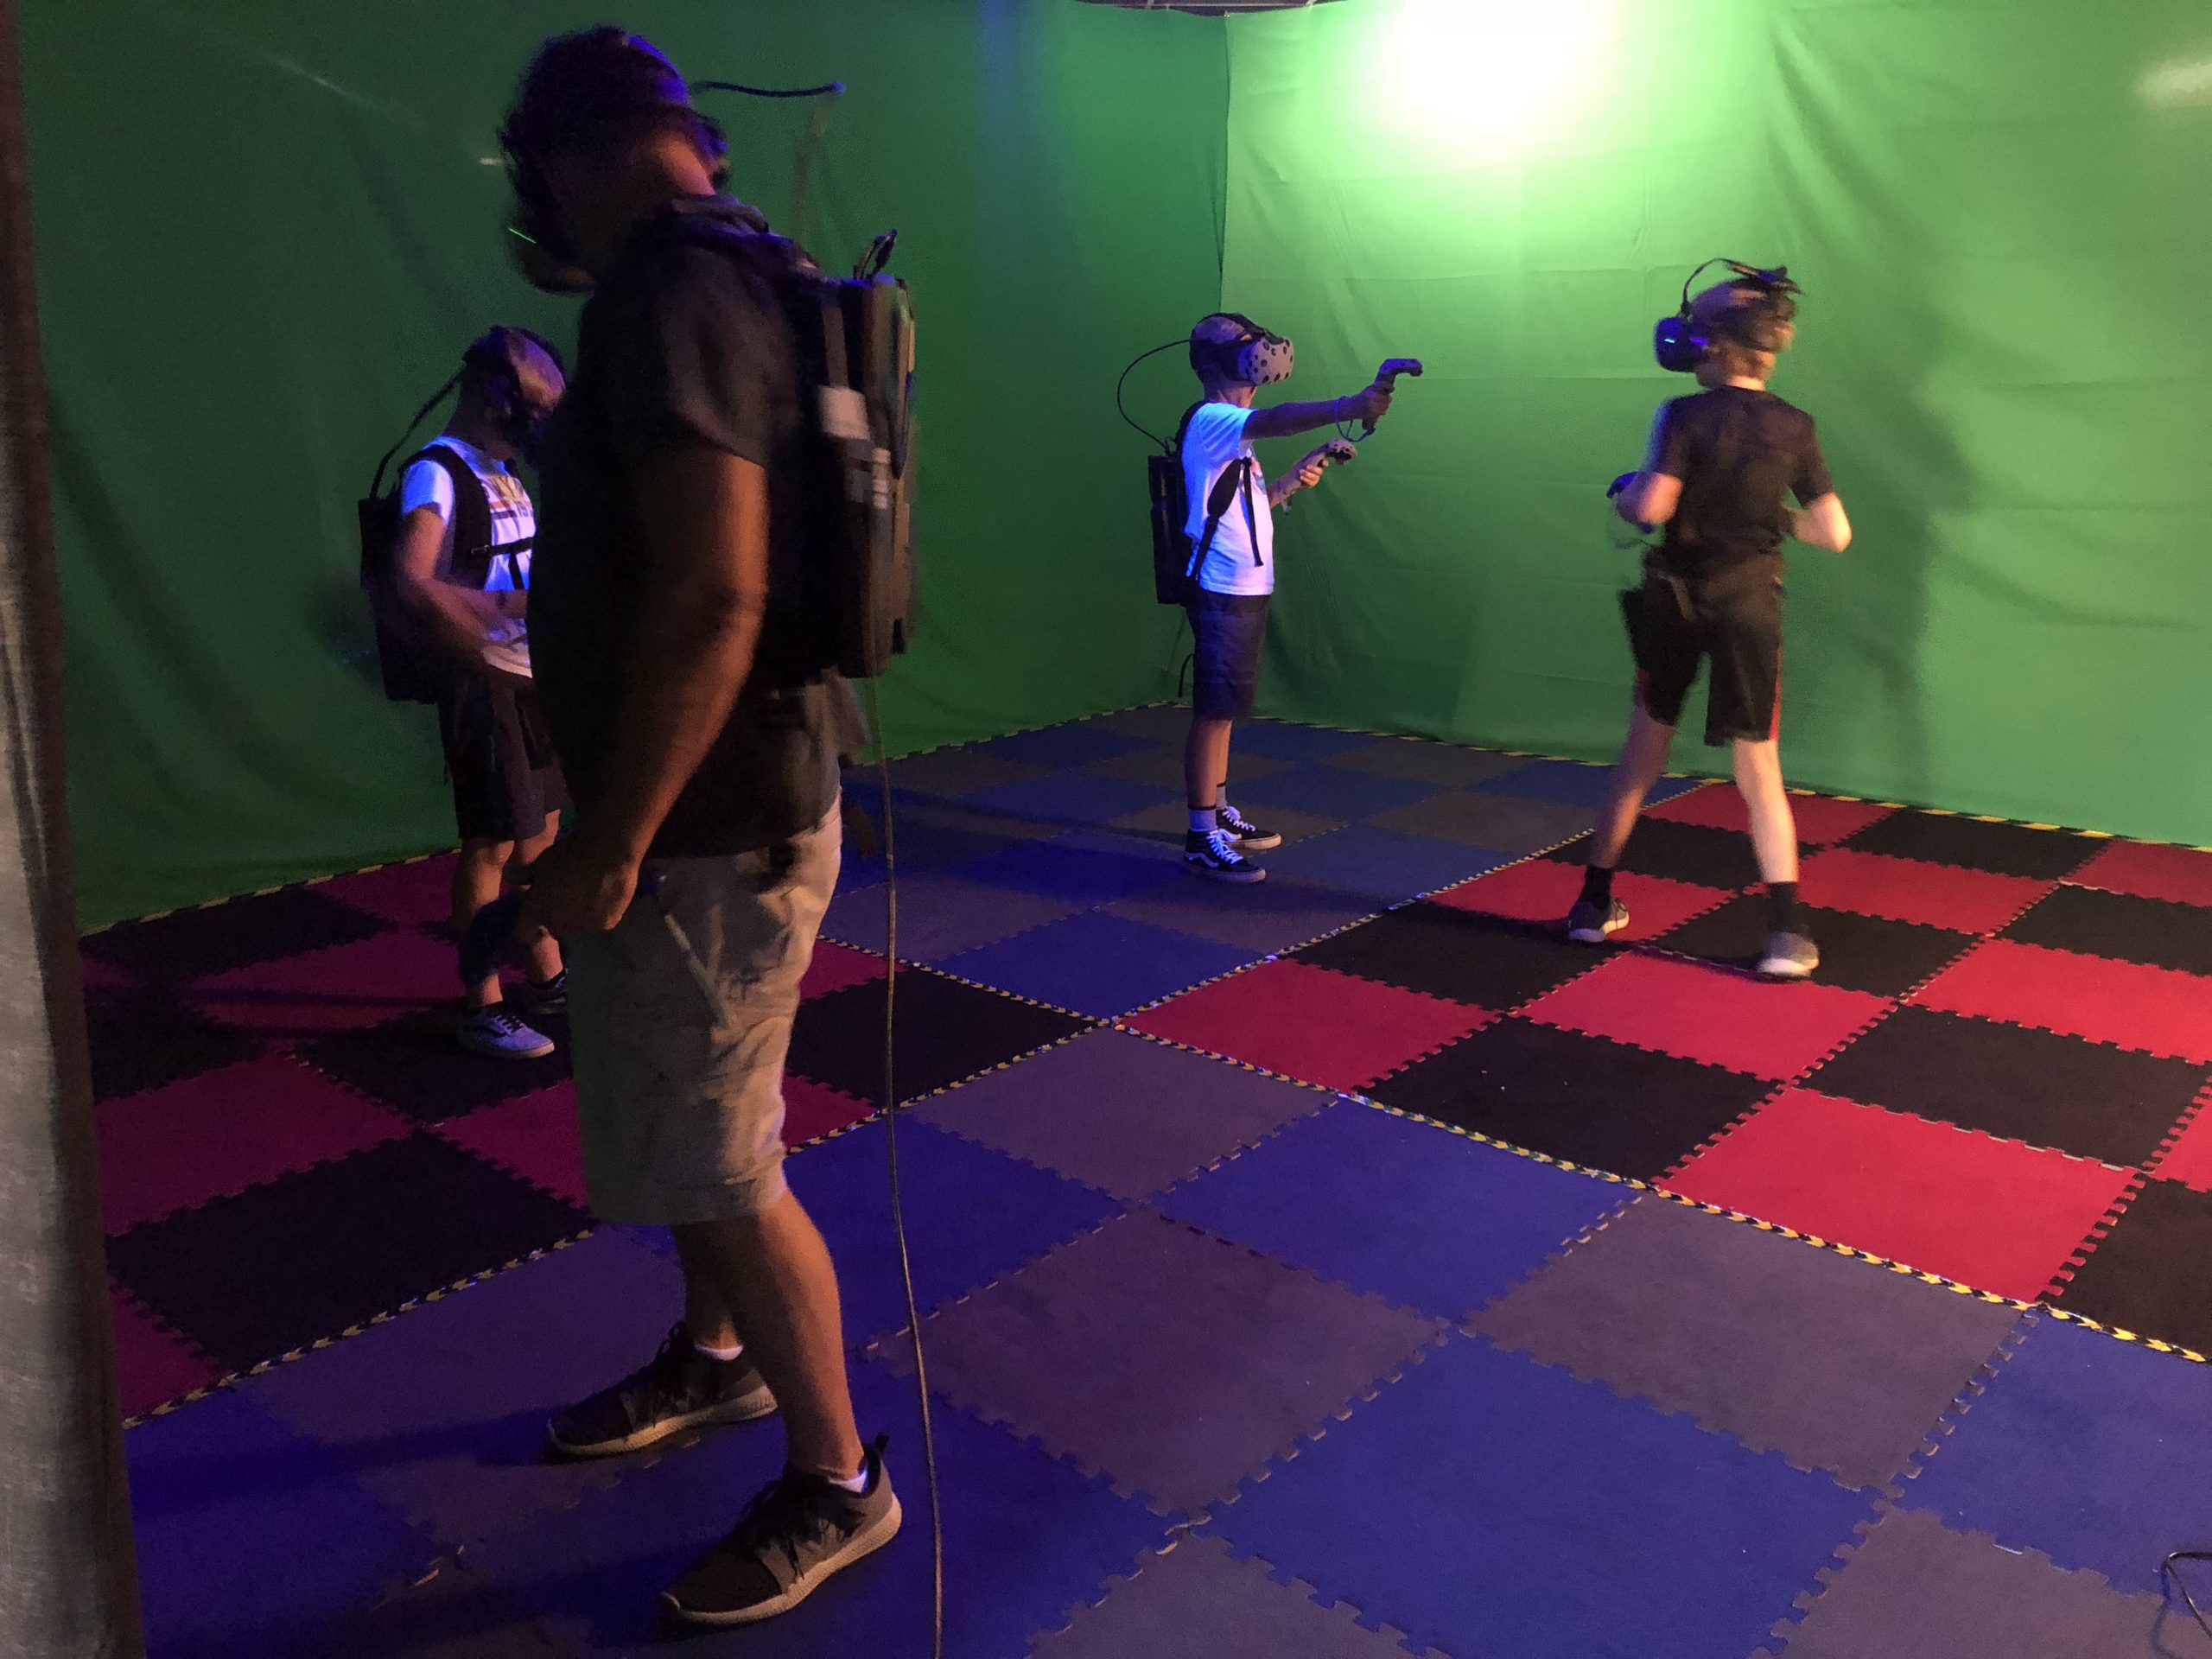 VR Escape Room Event